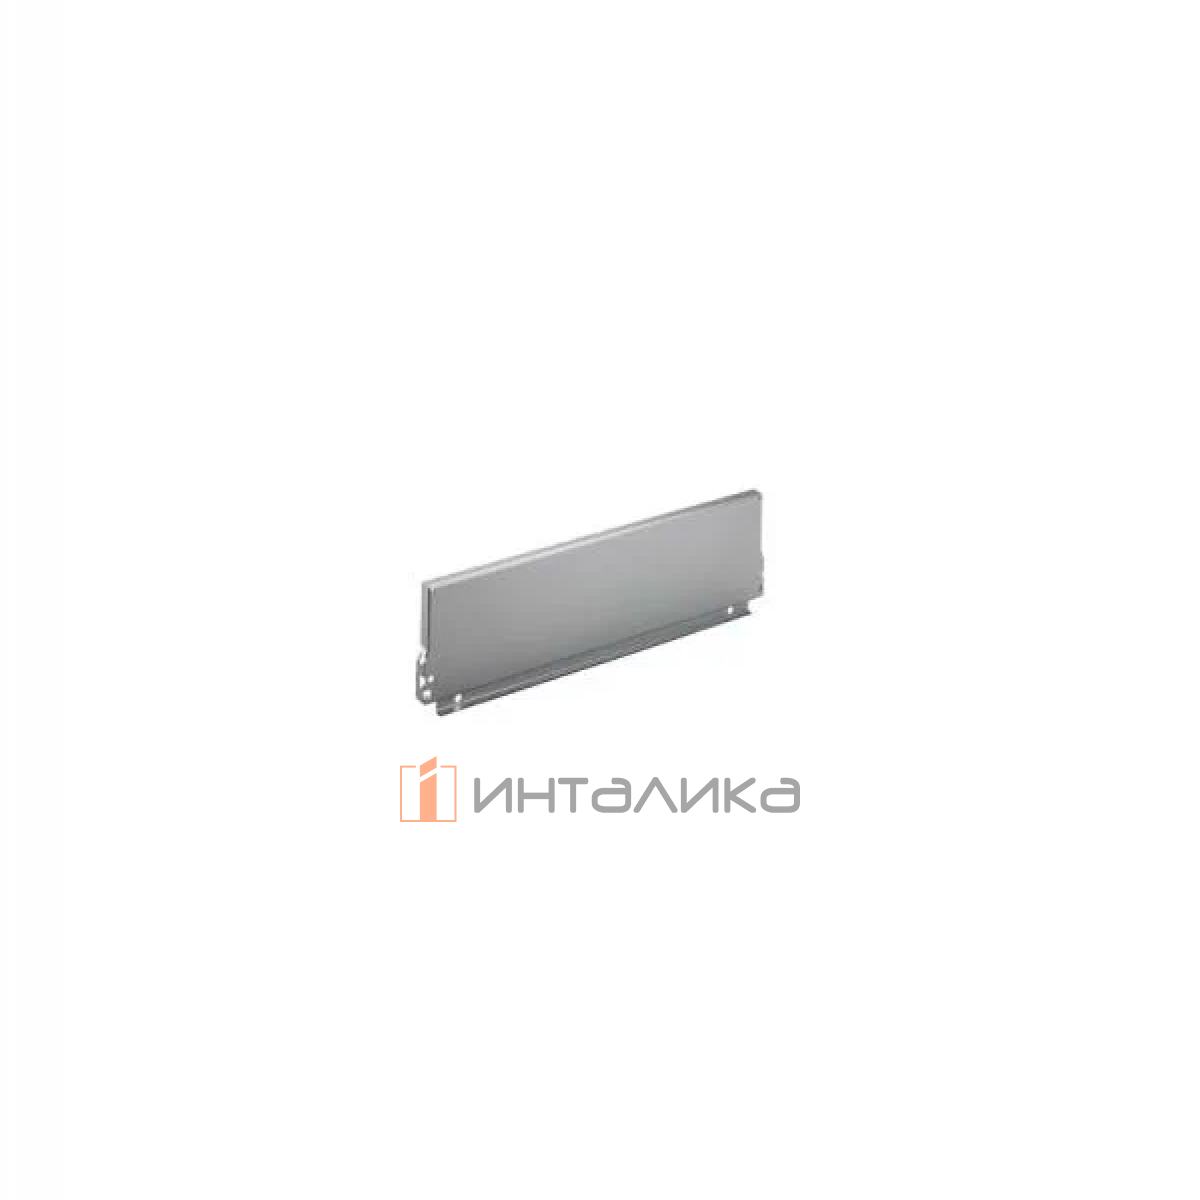 Задняя стенка HETTICH InnoTech/InnoTech Atira, высота 144мм, H500 мм, сталь, цвет серебристый, (V20)